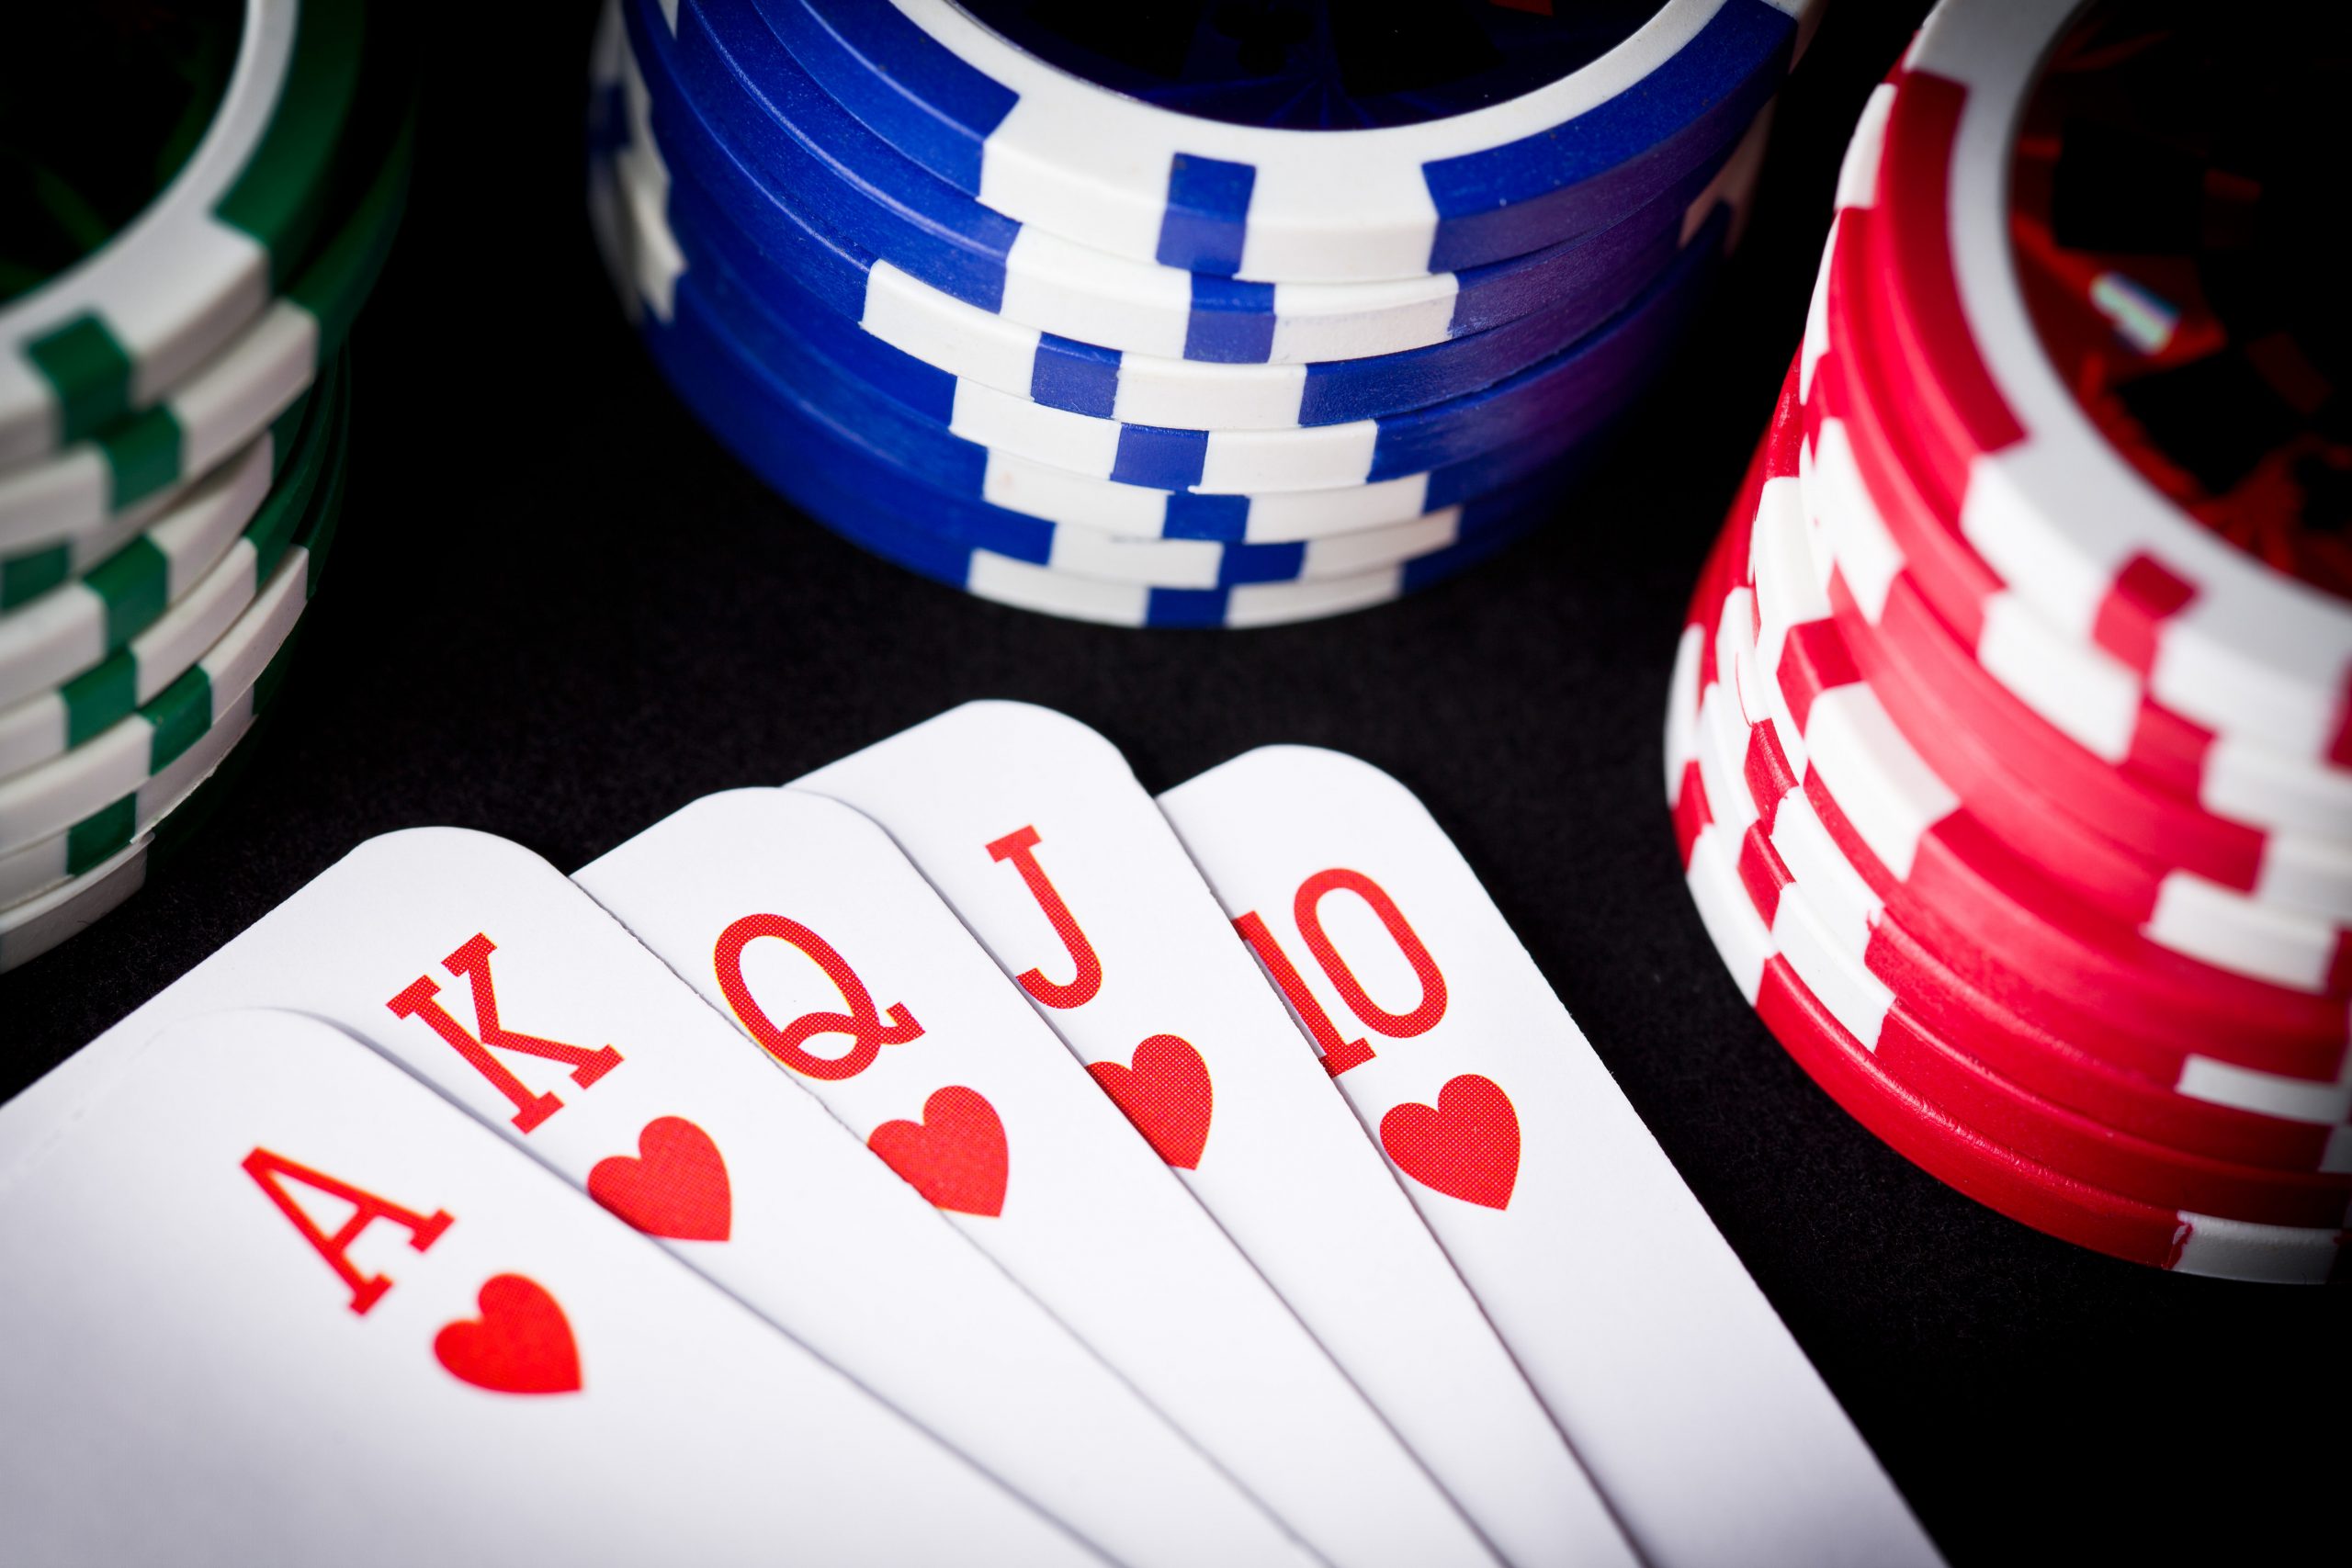 две пары в покере на столе